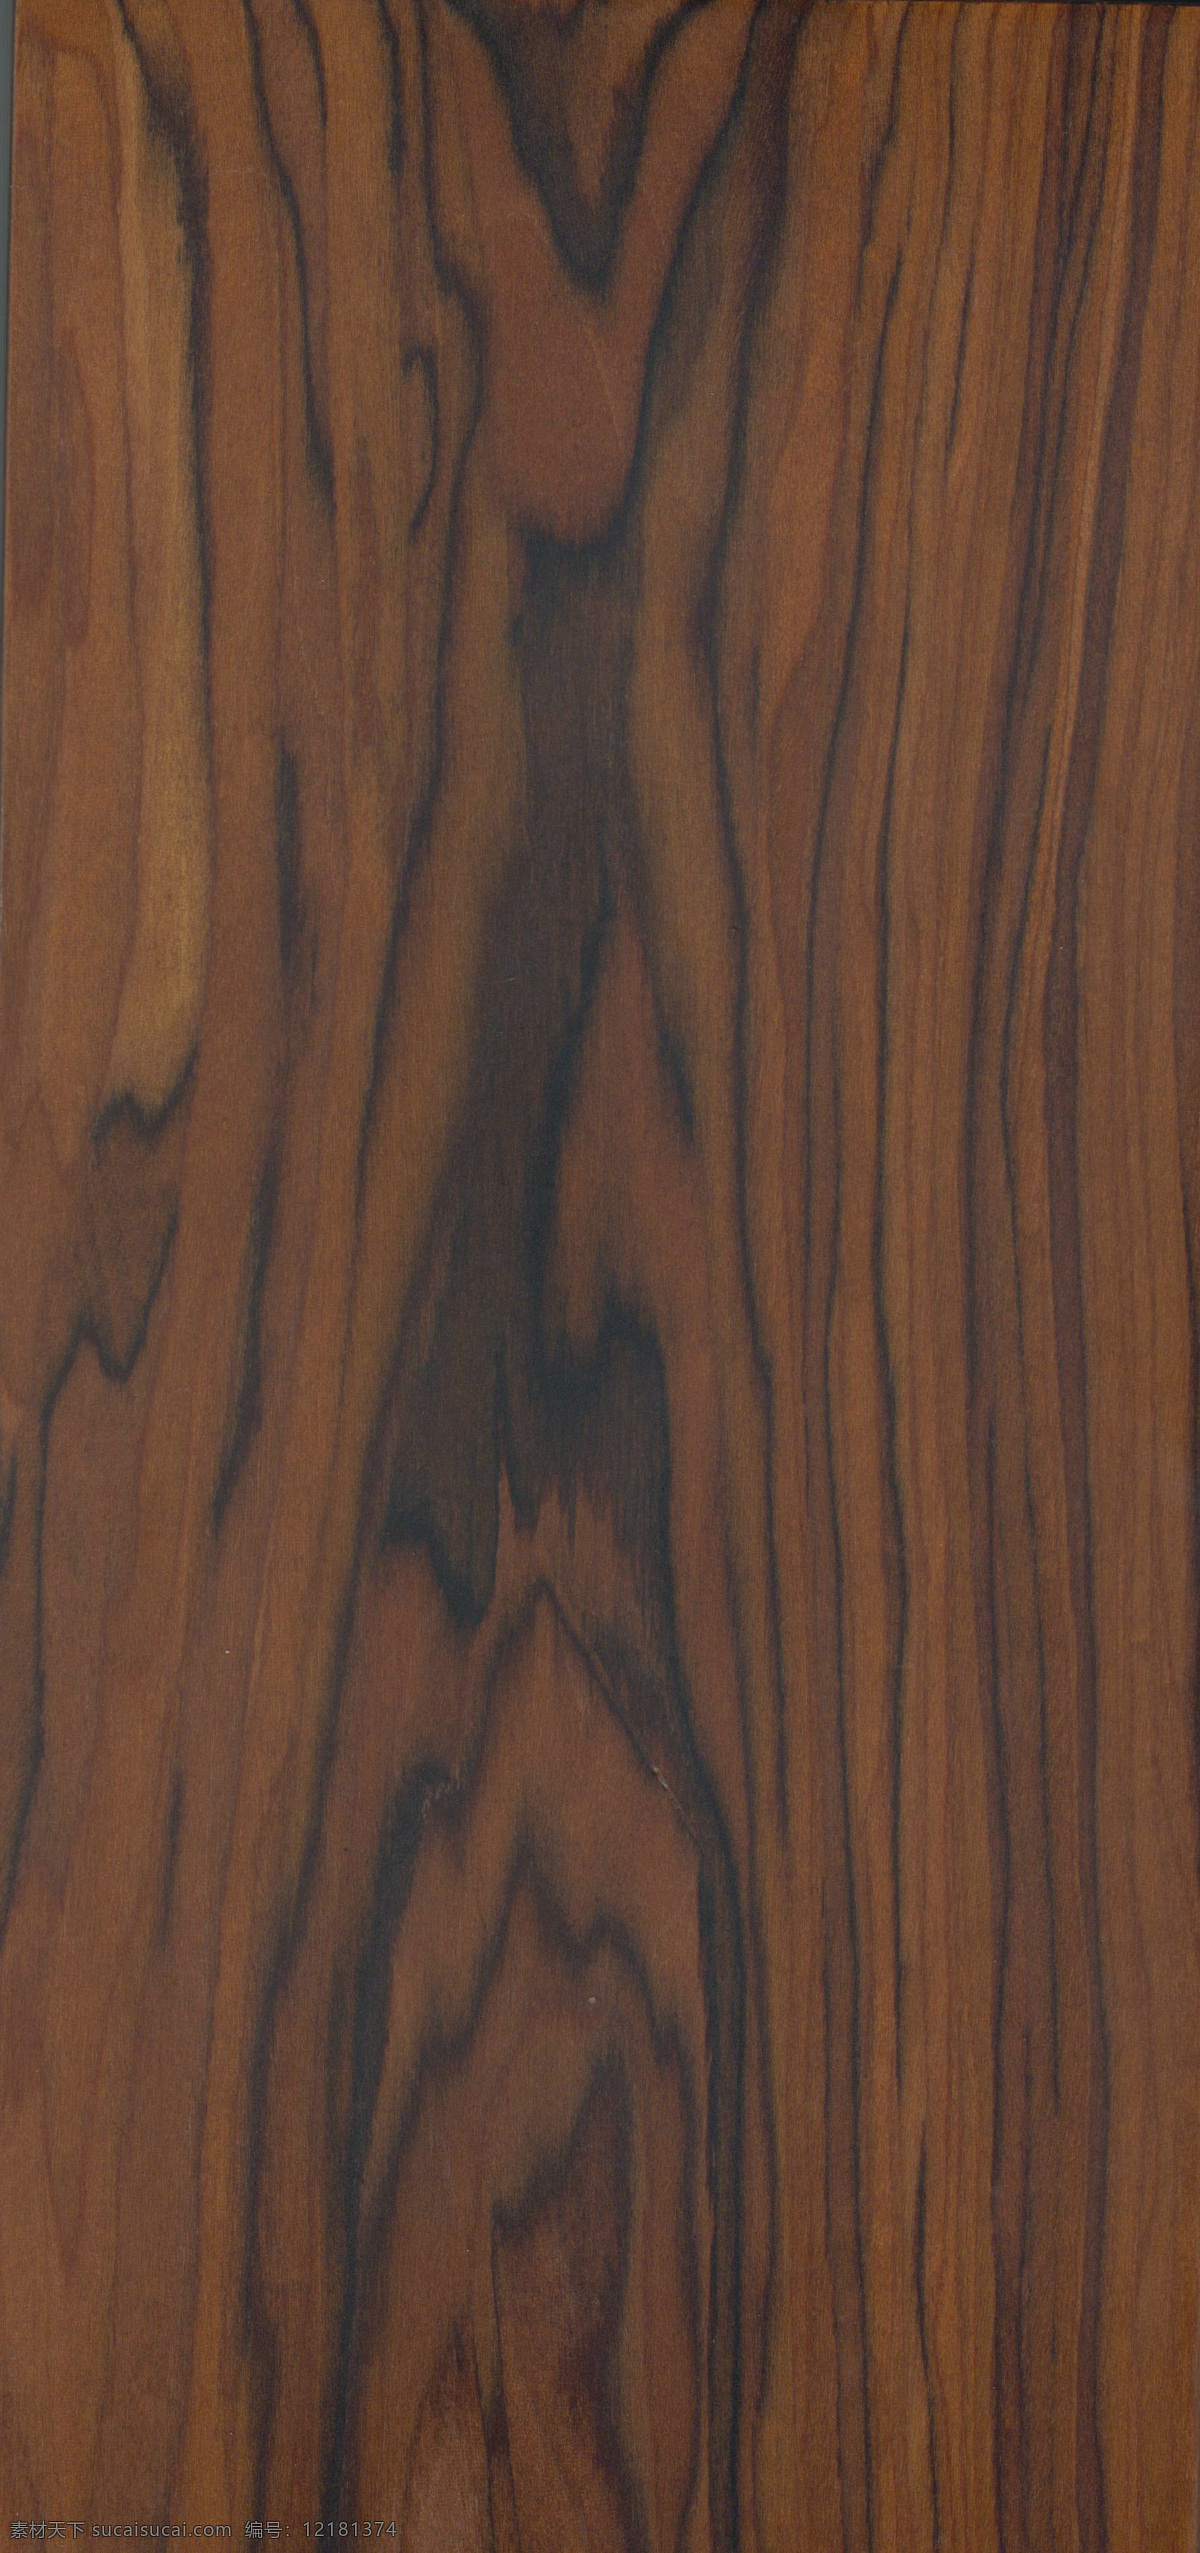 酸枝 木纹 木纹贴图 贴图 3d贴图 木料 木材 木材贴图 材质贴图 模型贴图 木质 地板 地板贴图 素材贴图 纹理贴图 木板 木饰面 生活百科 生活素材